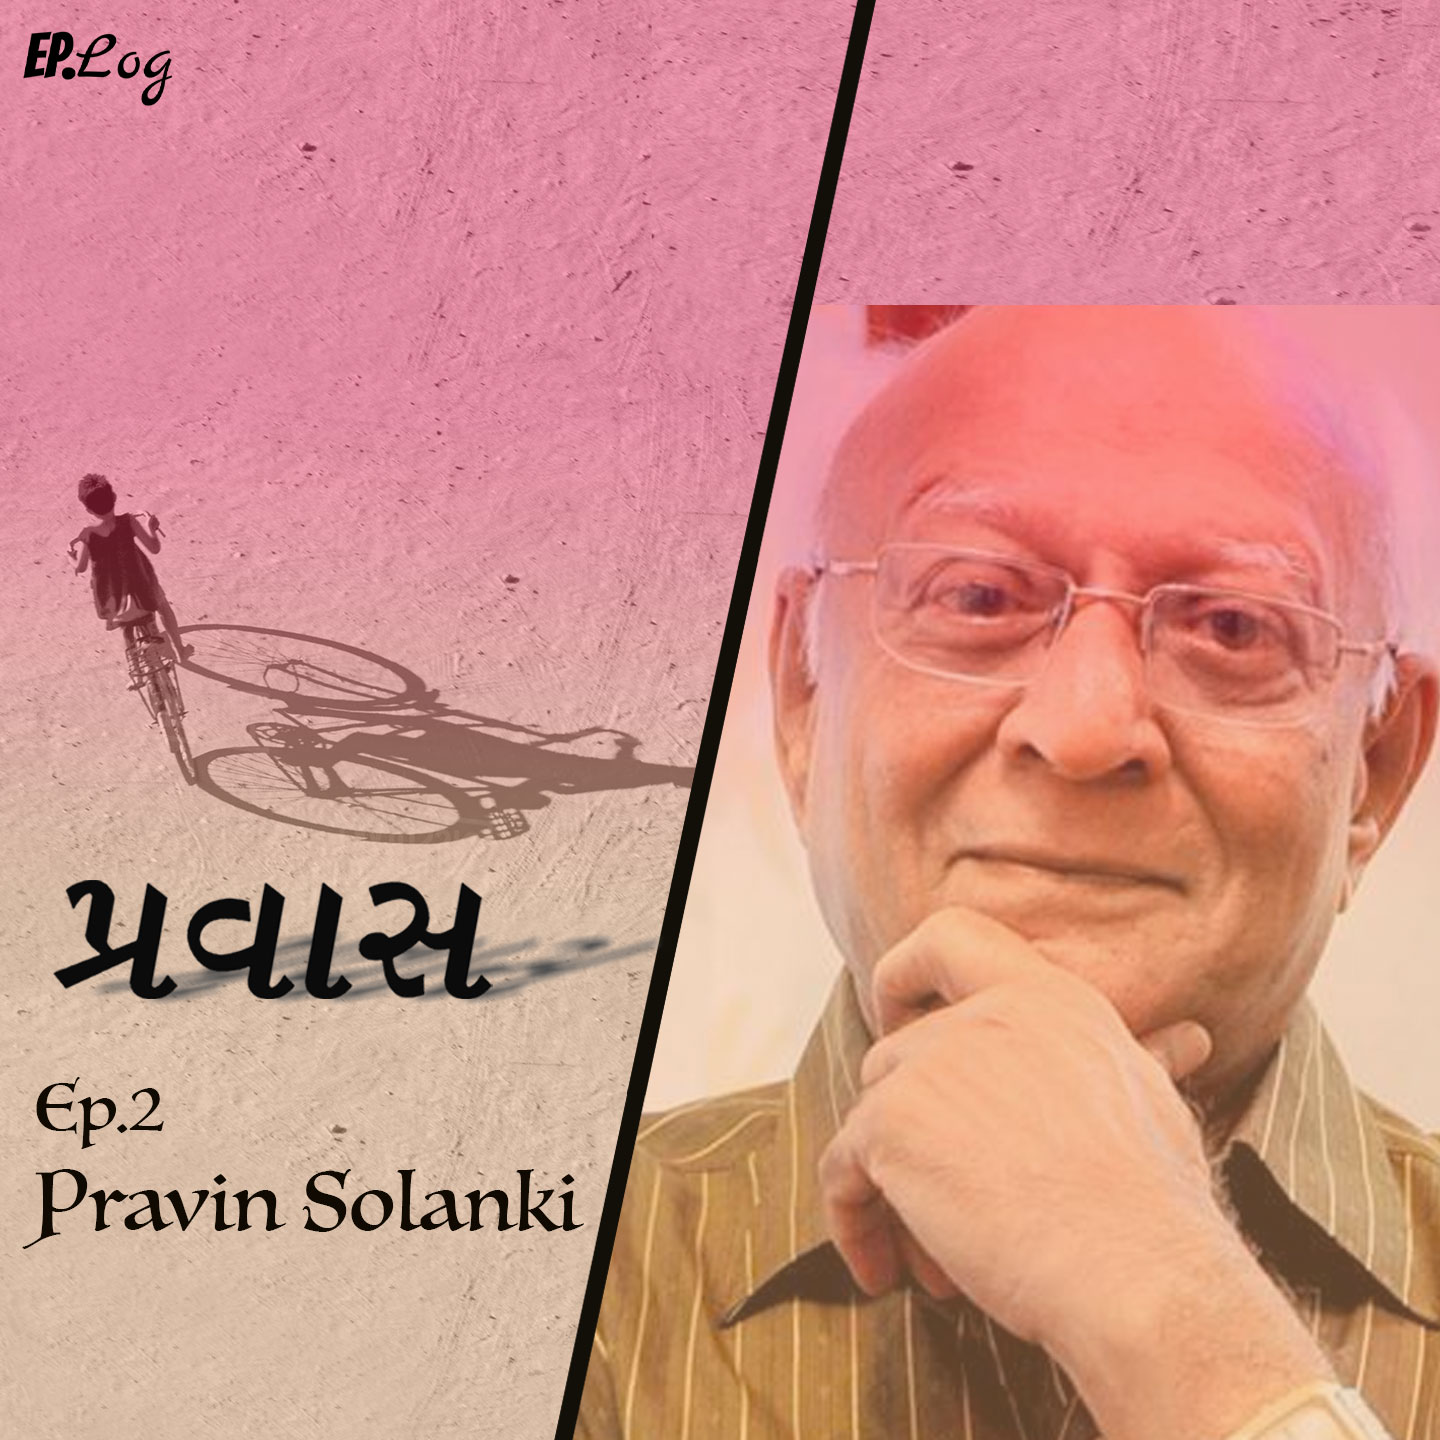 Ep.2 Pravin Solanki, Writer